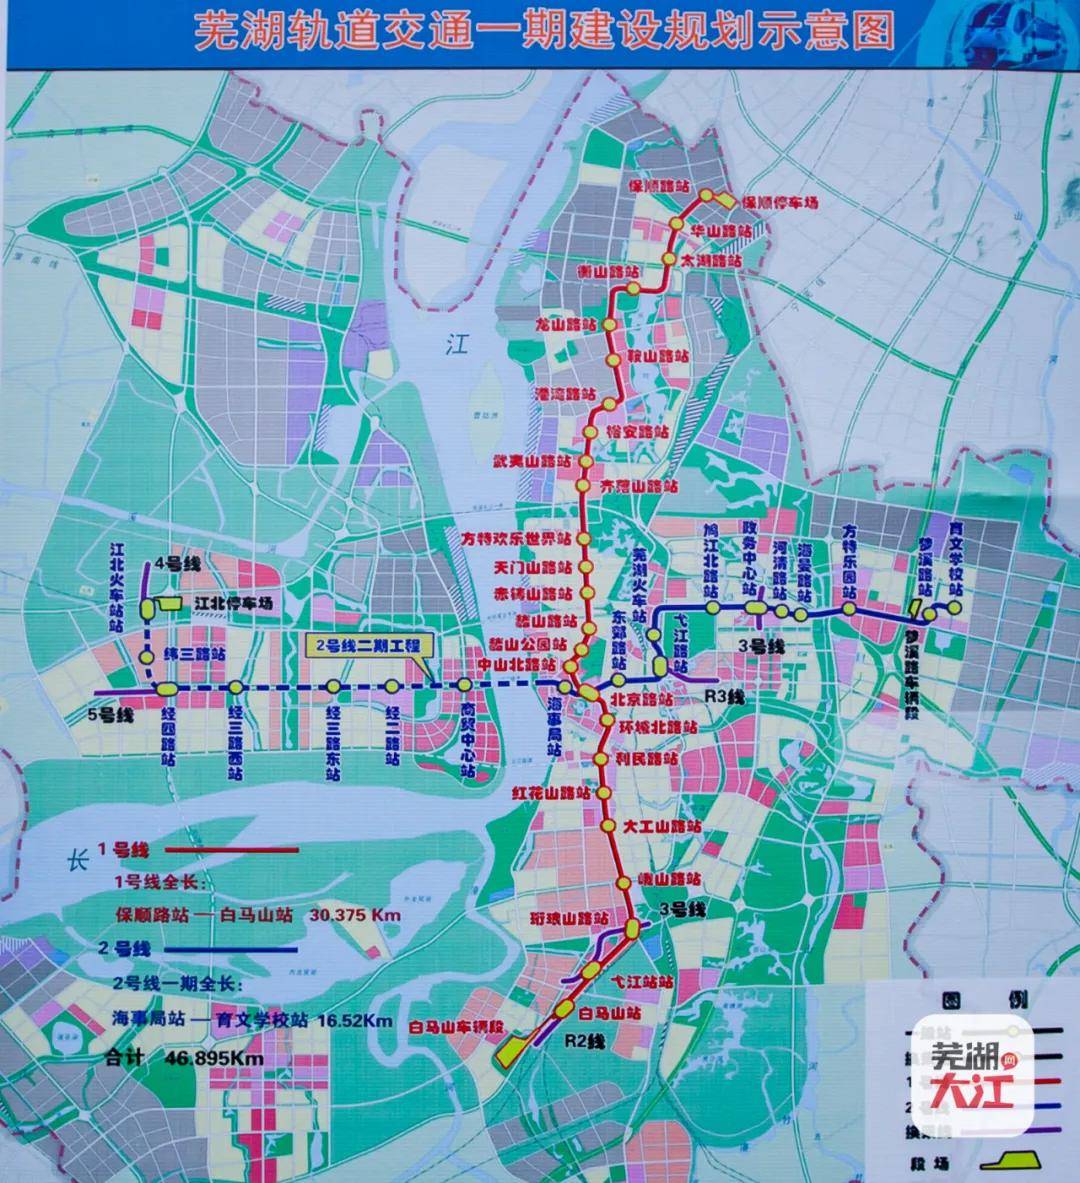 且北京路过江隧道为芜湖轨道交通2号线(二期) 城市道路过江通道!